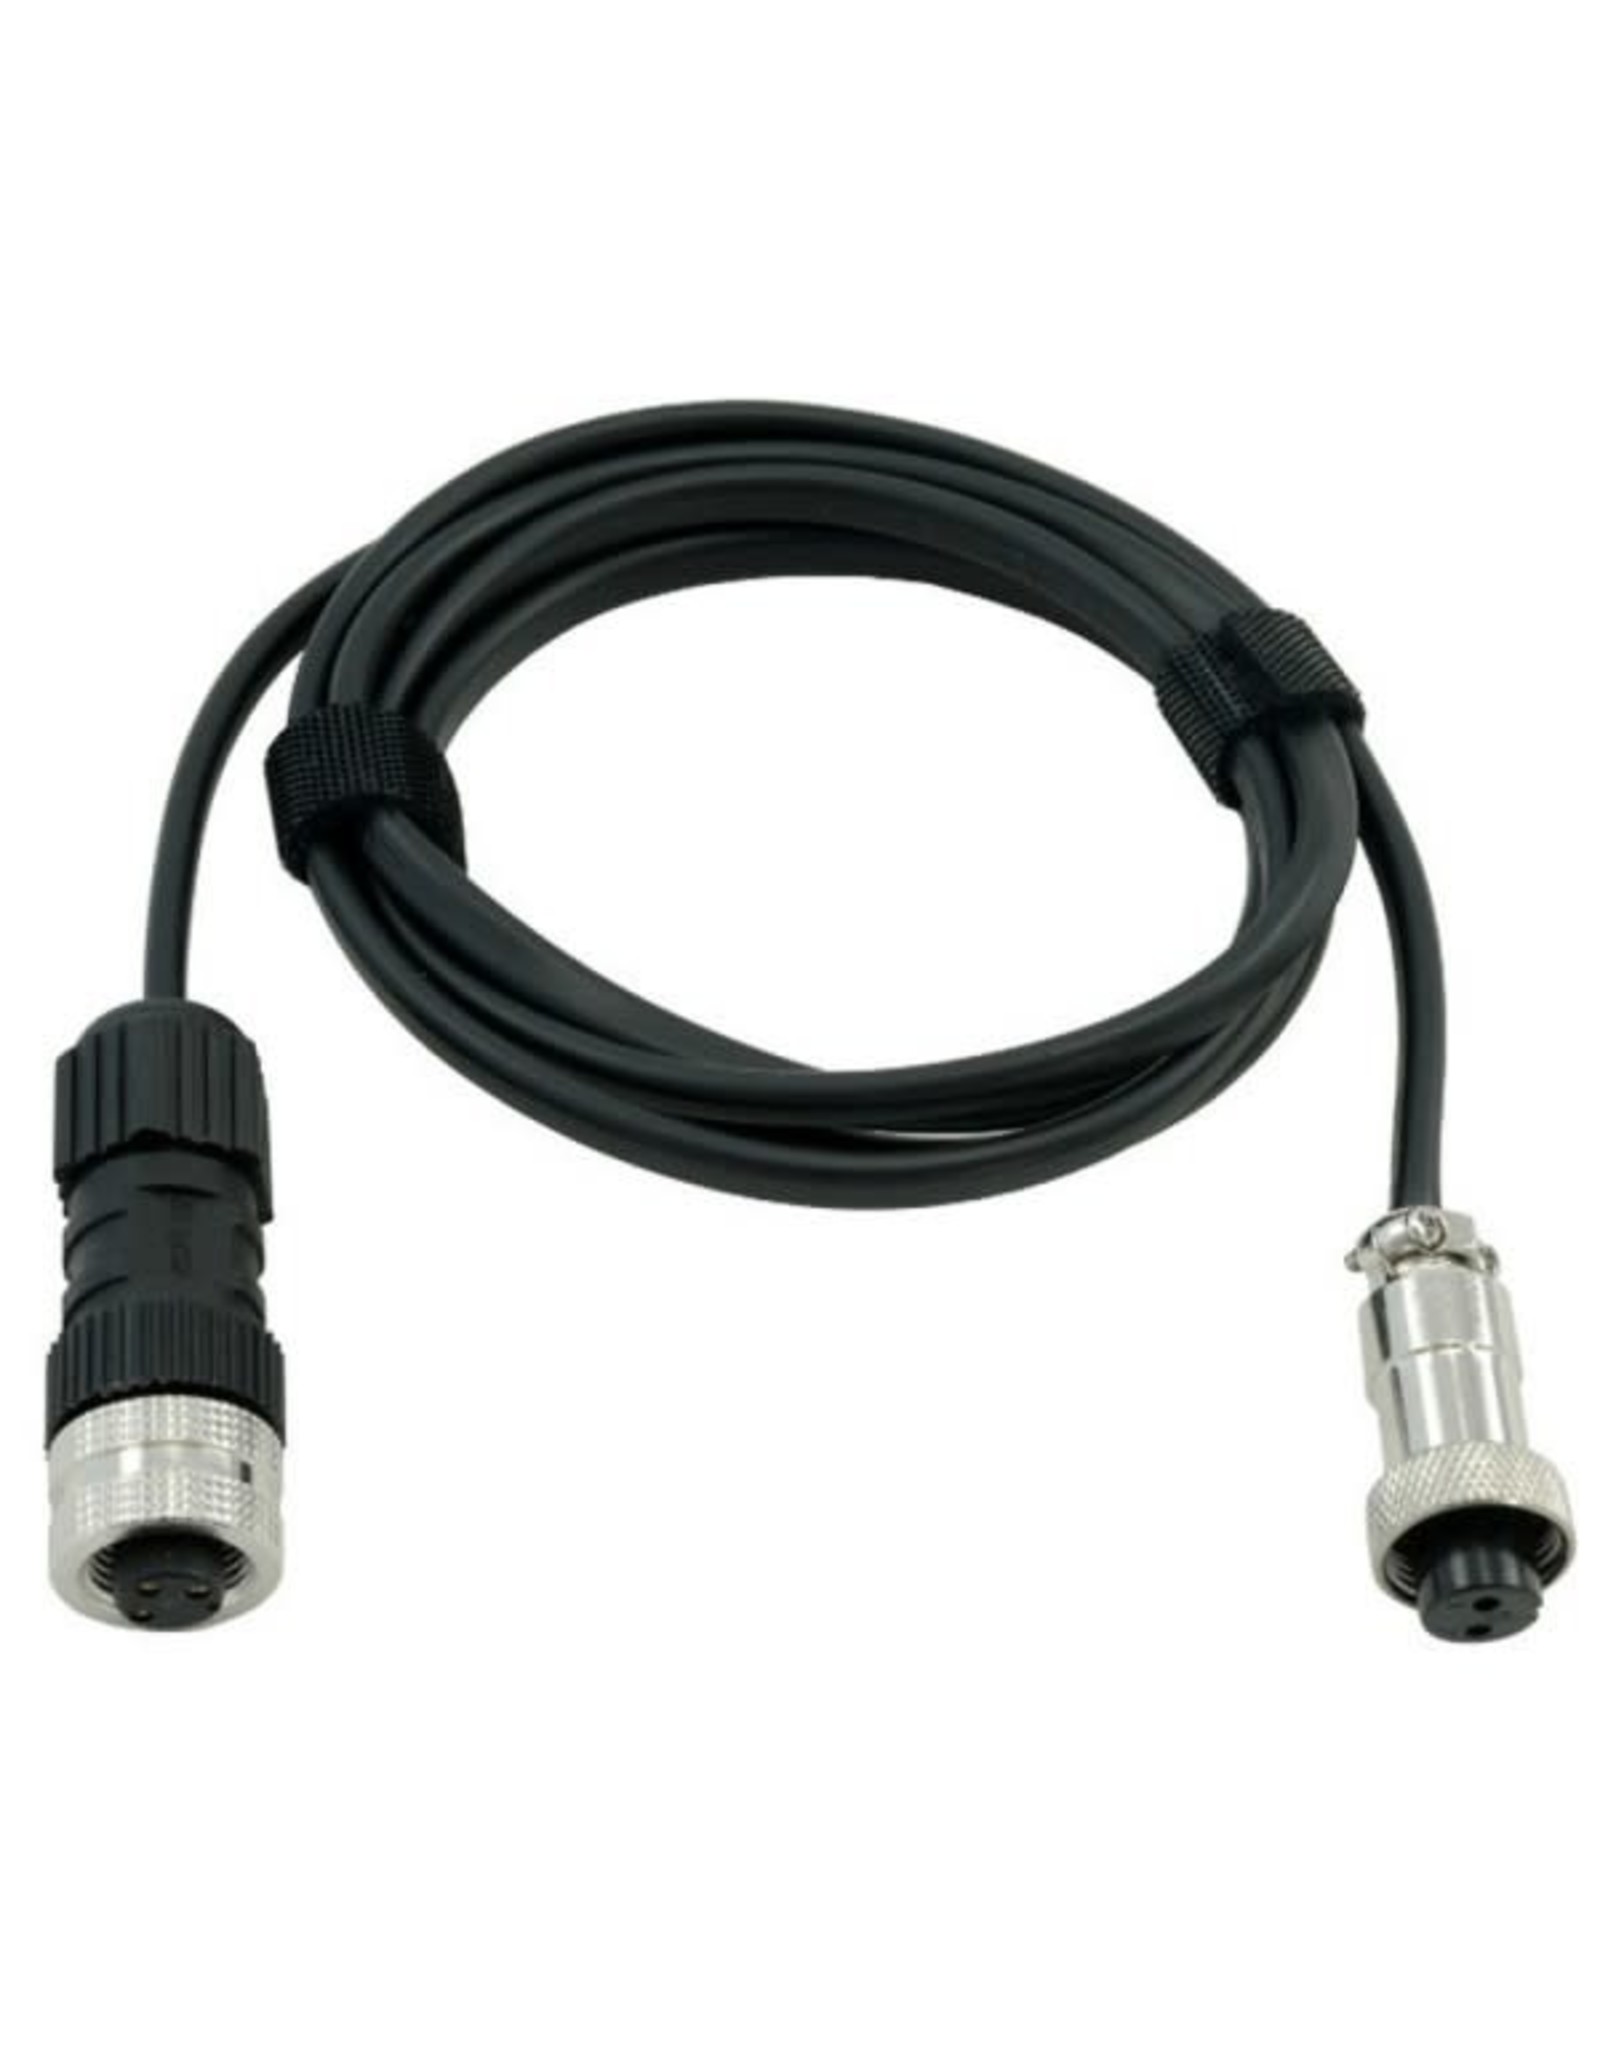 PrimaLuceLab Primaluce Eagle-compatible power cable for SkyWatcher EQ8 mounts - 115cm 8A